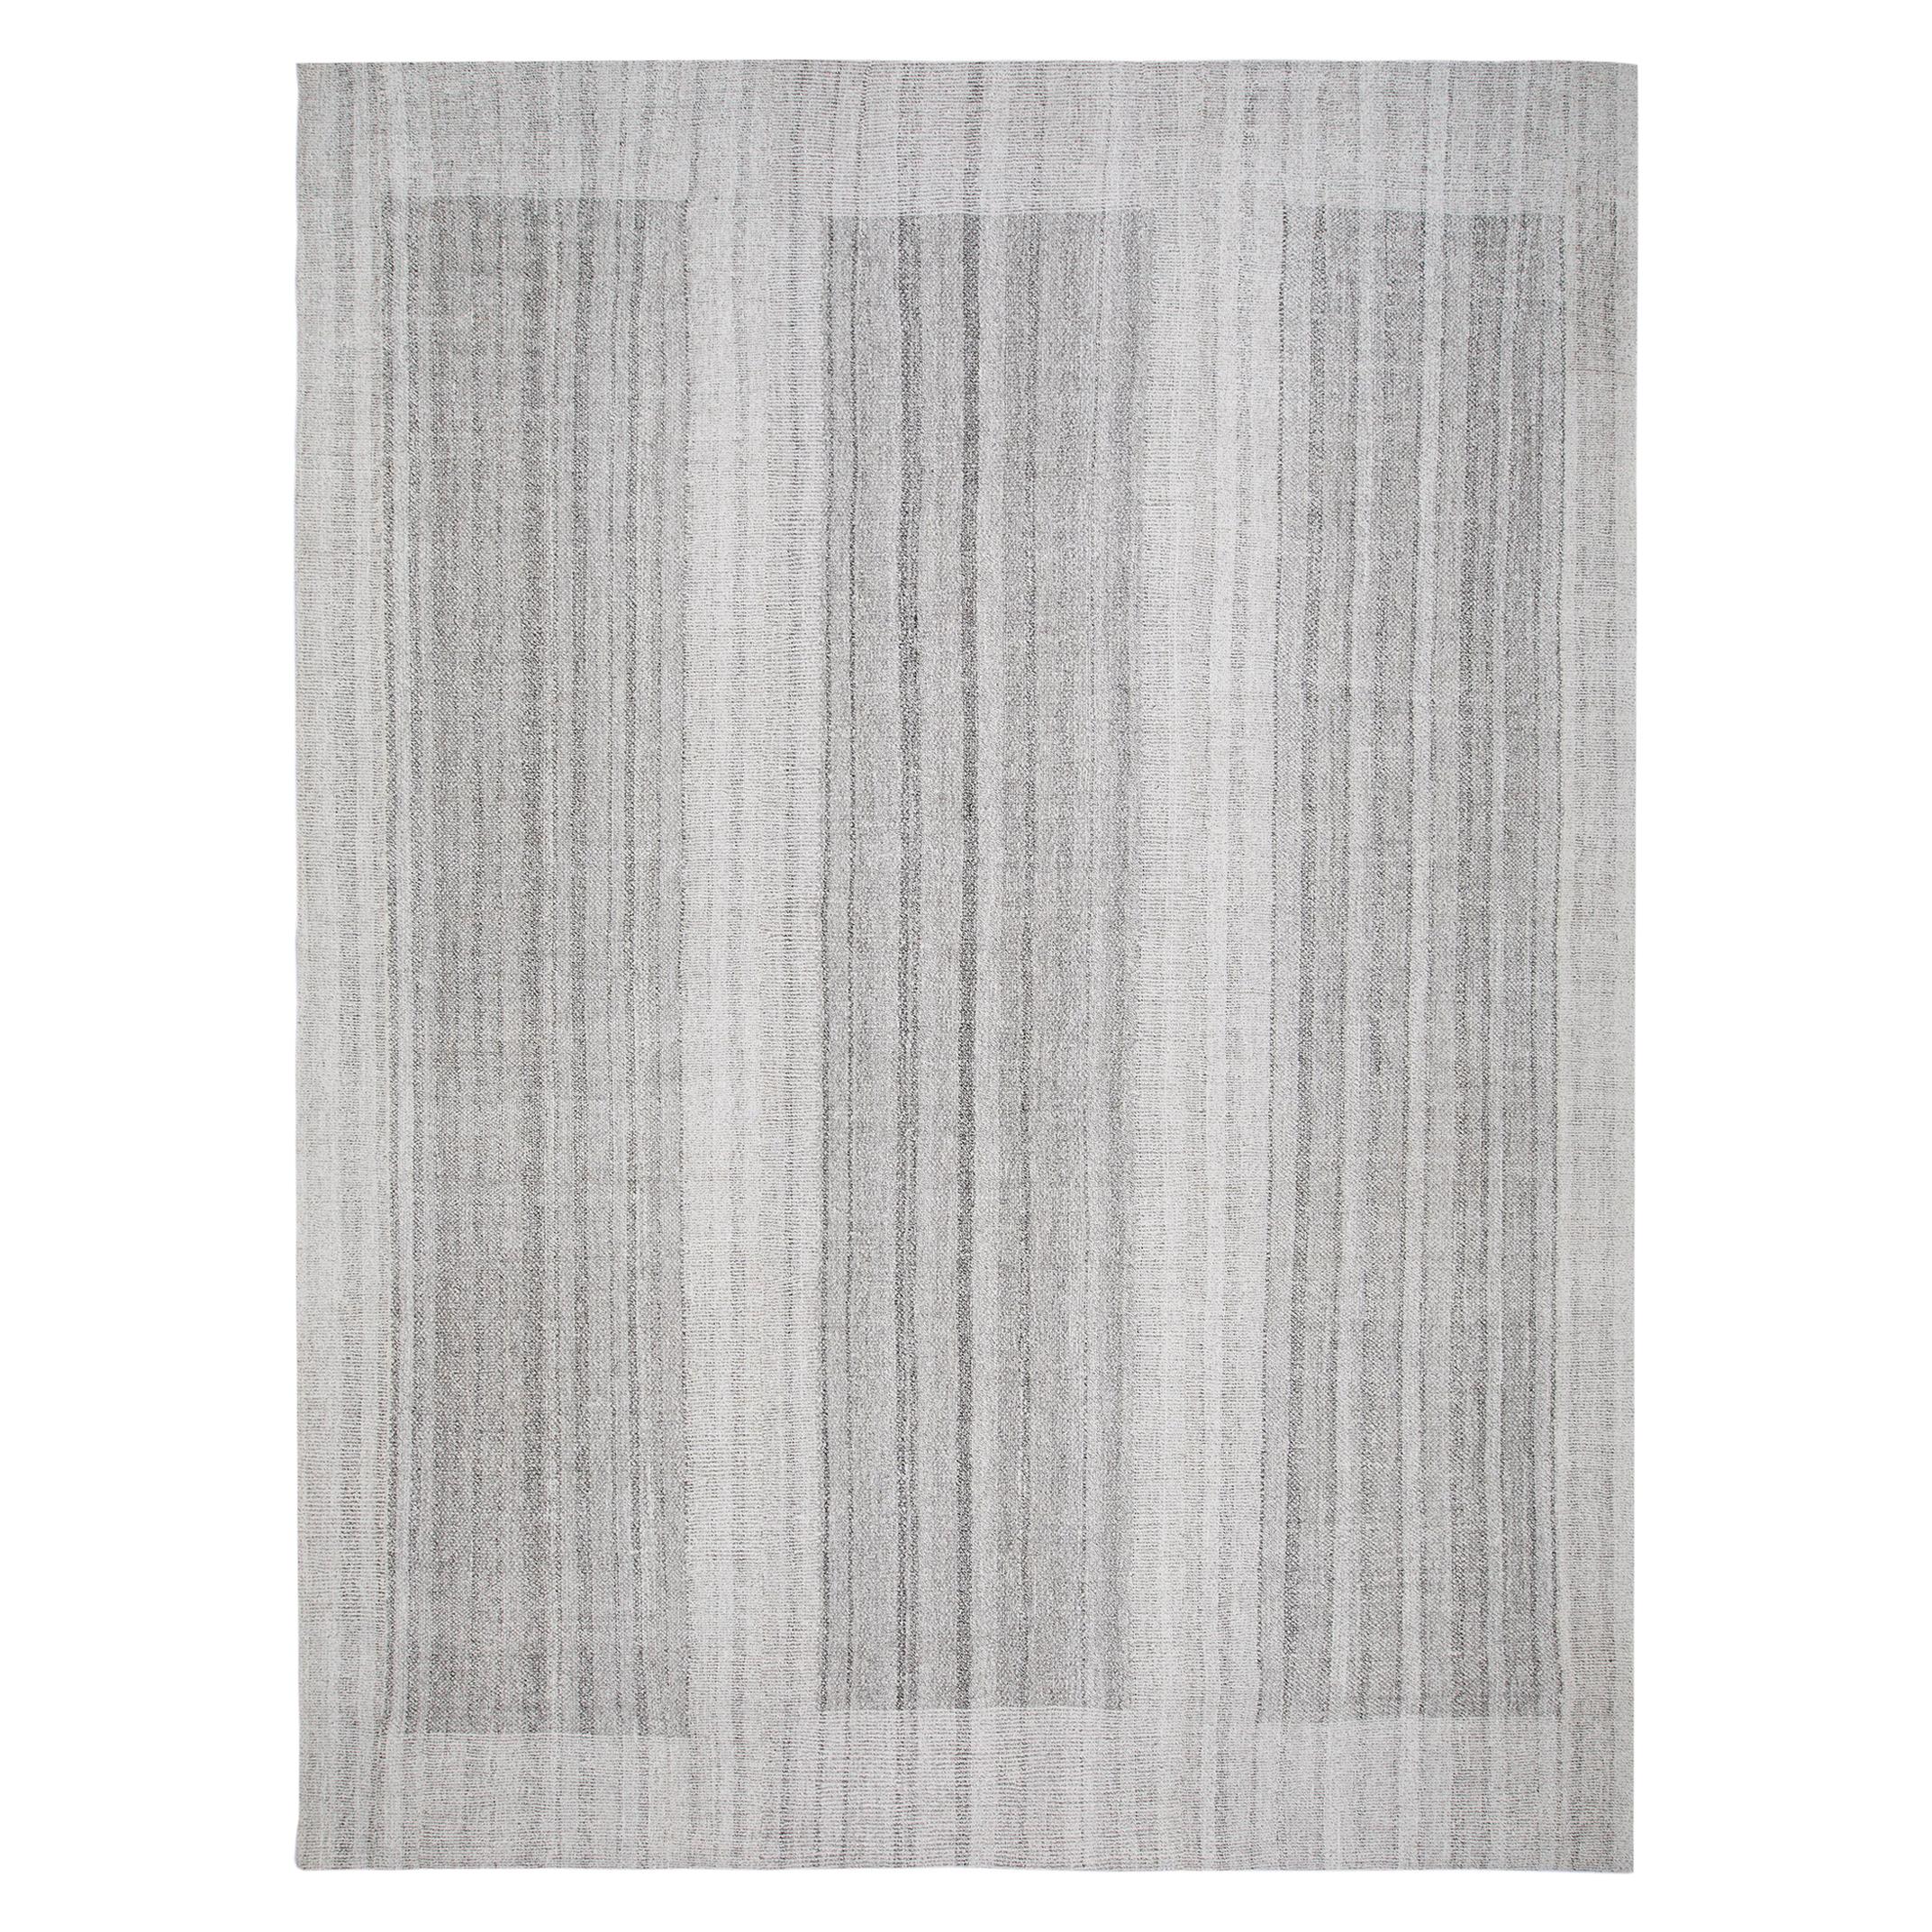 Einzigartiger moderner handgewebter, strukturierter Flachgewebe-Teppich in Grautönen